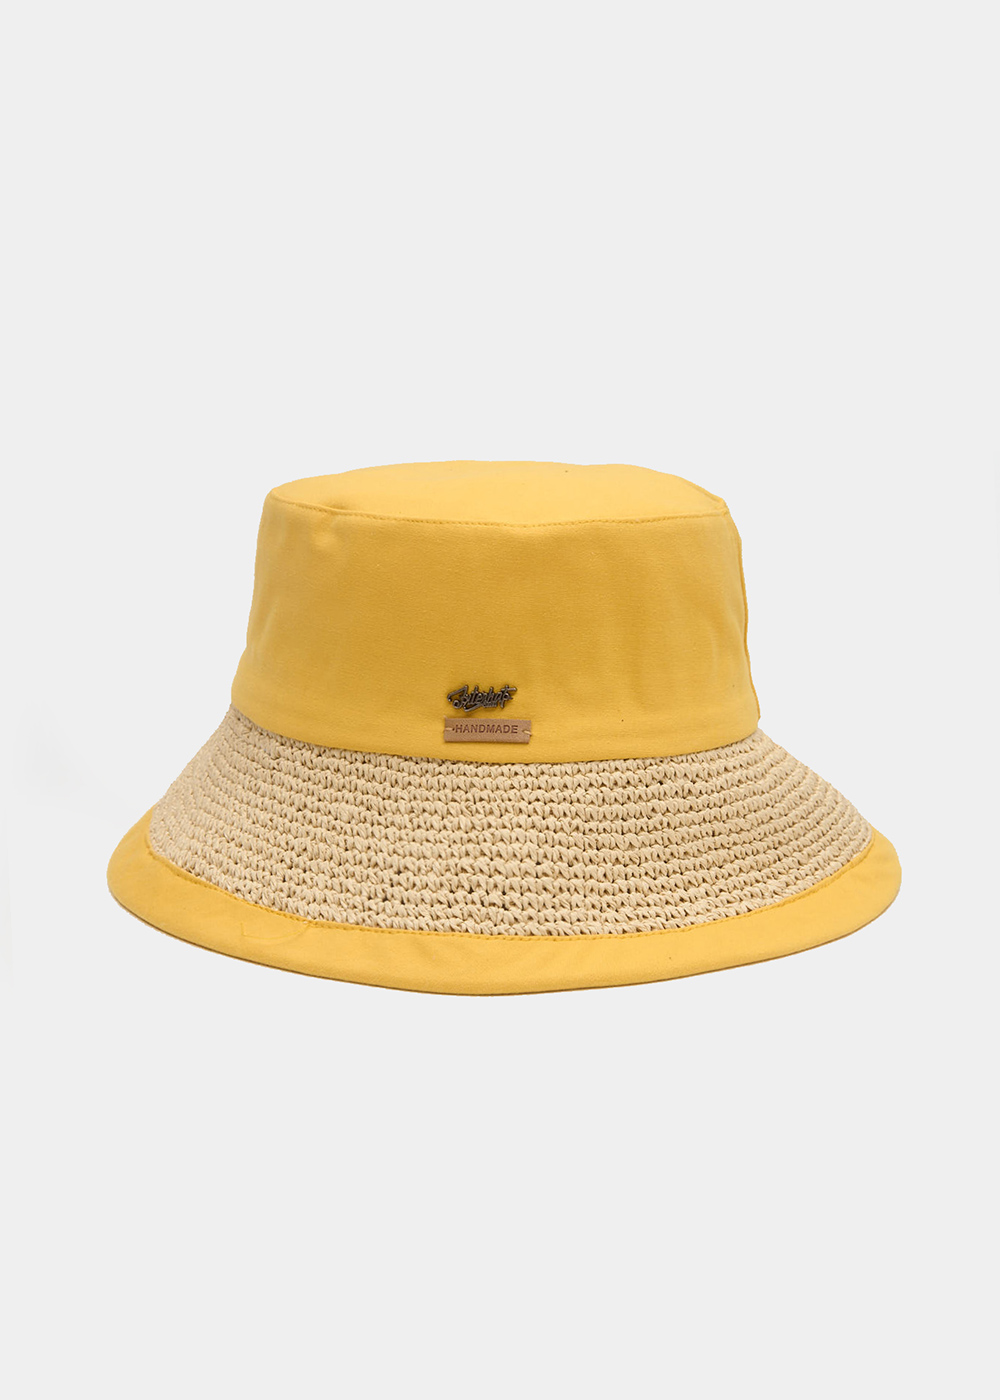 Mustard Bucket Cotton & Straw Hat 